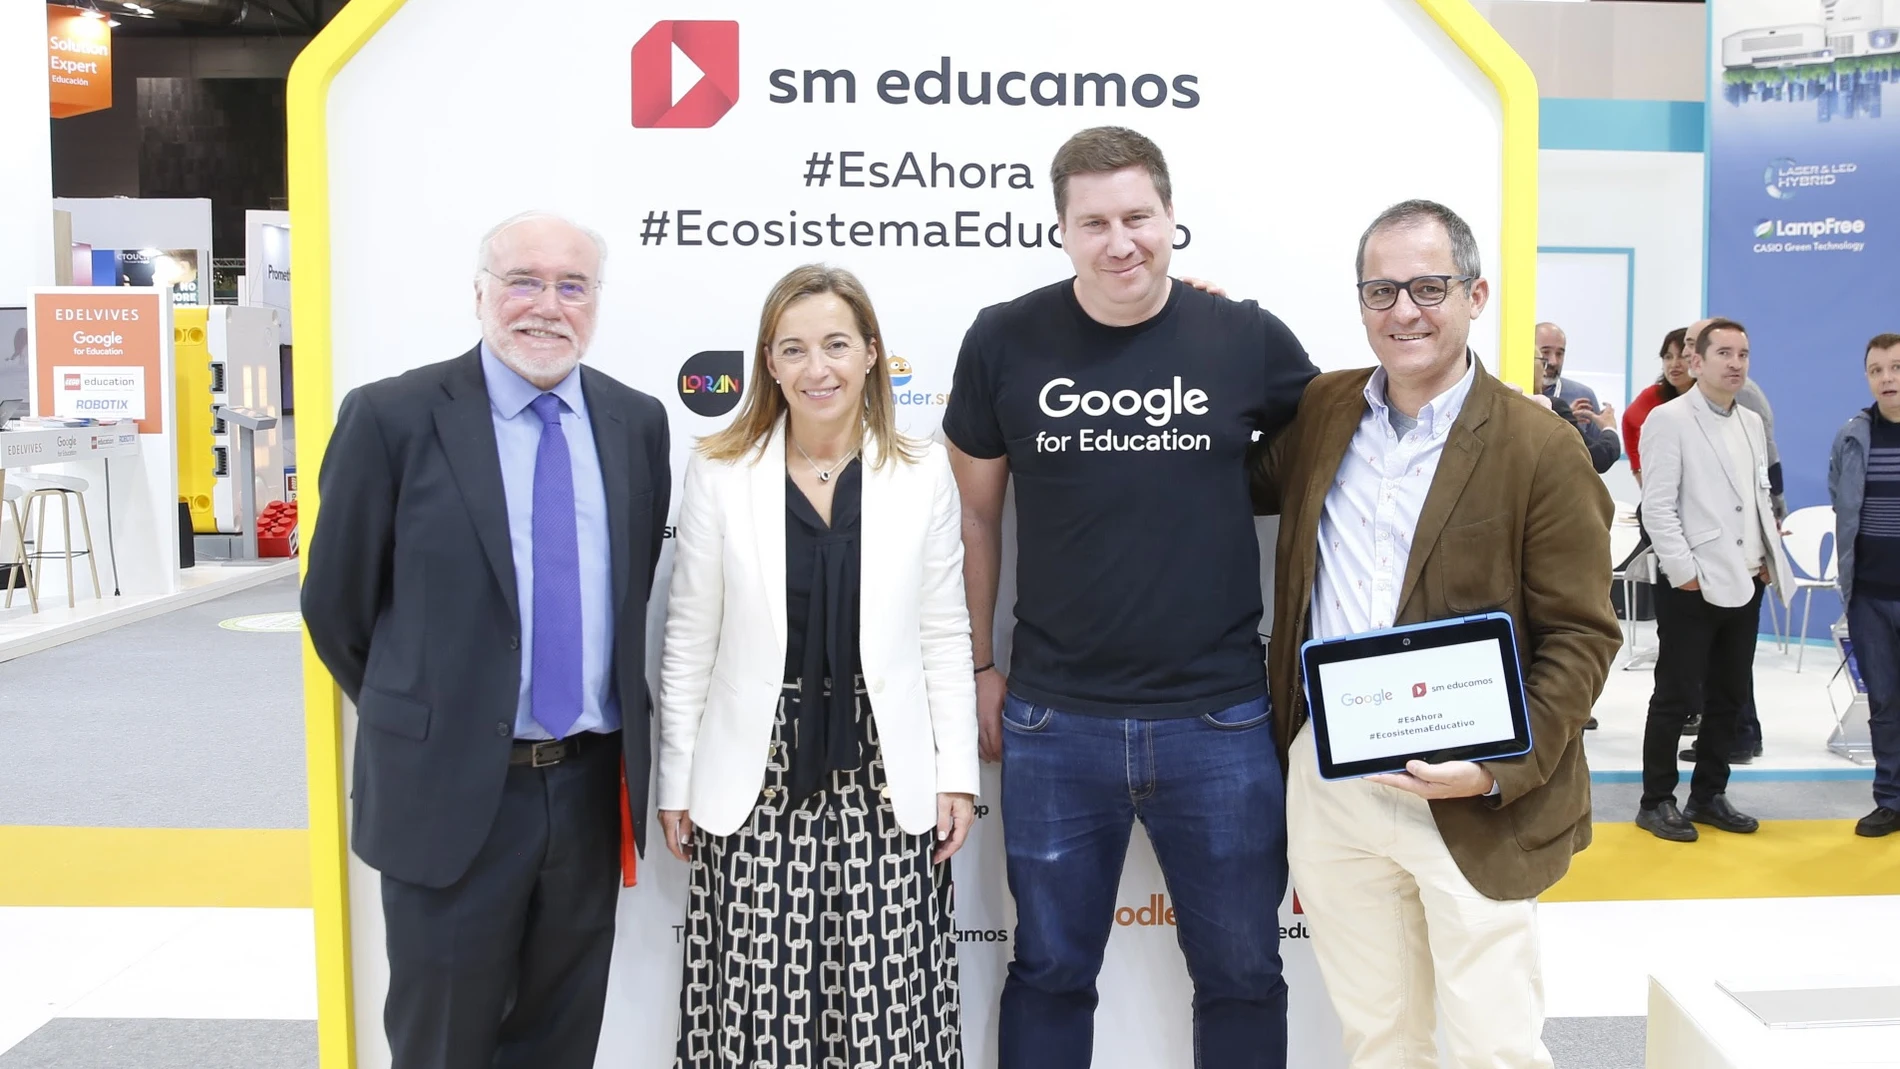 SM Educamos y Google for Education compartirán los beneficios de esta integración a través de unas jornadas dirigidas a profesores en cinco ciudades.